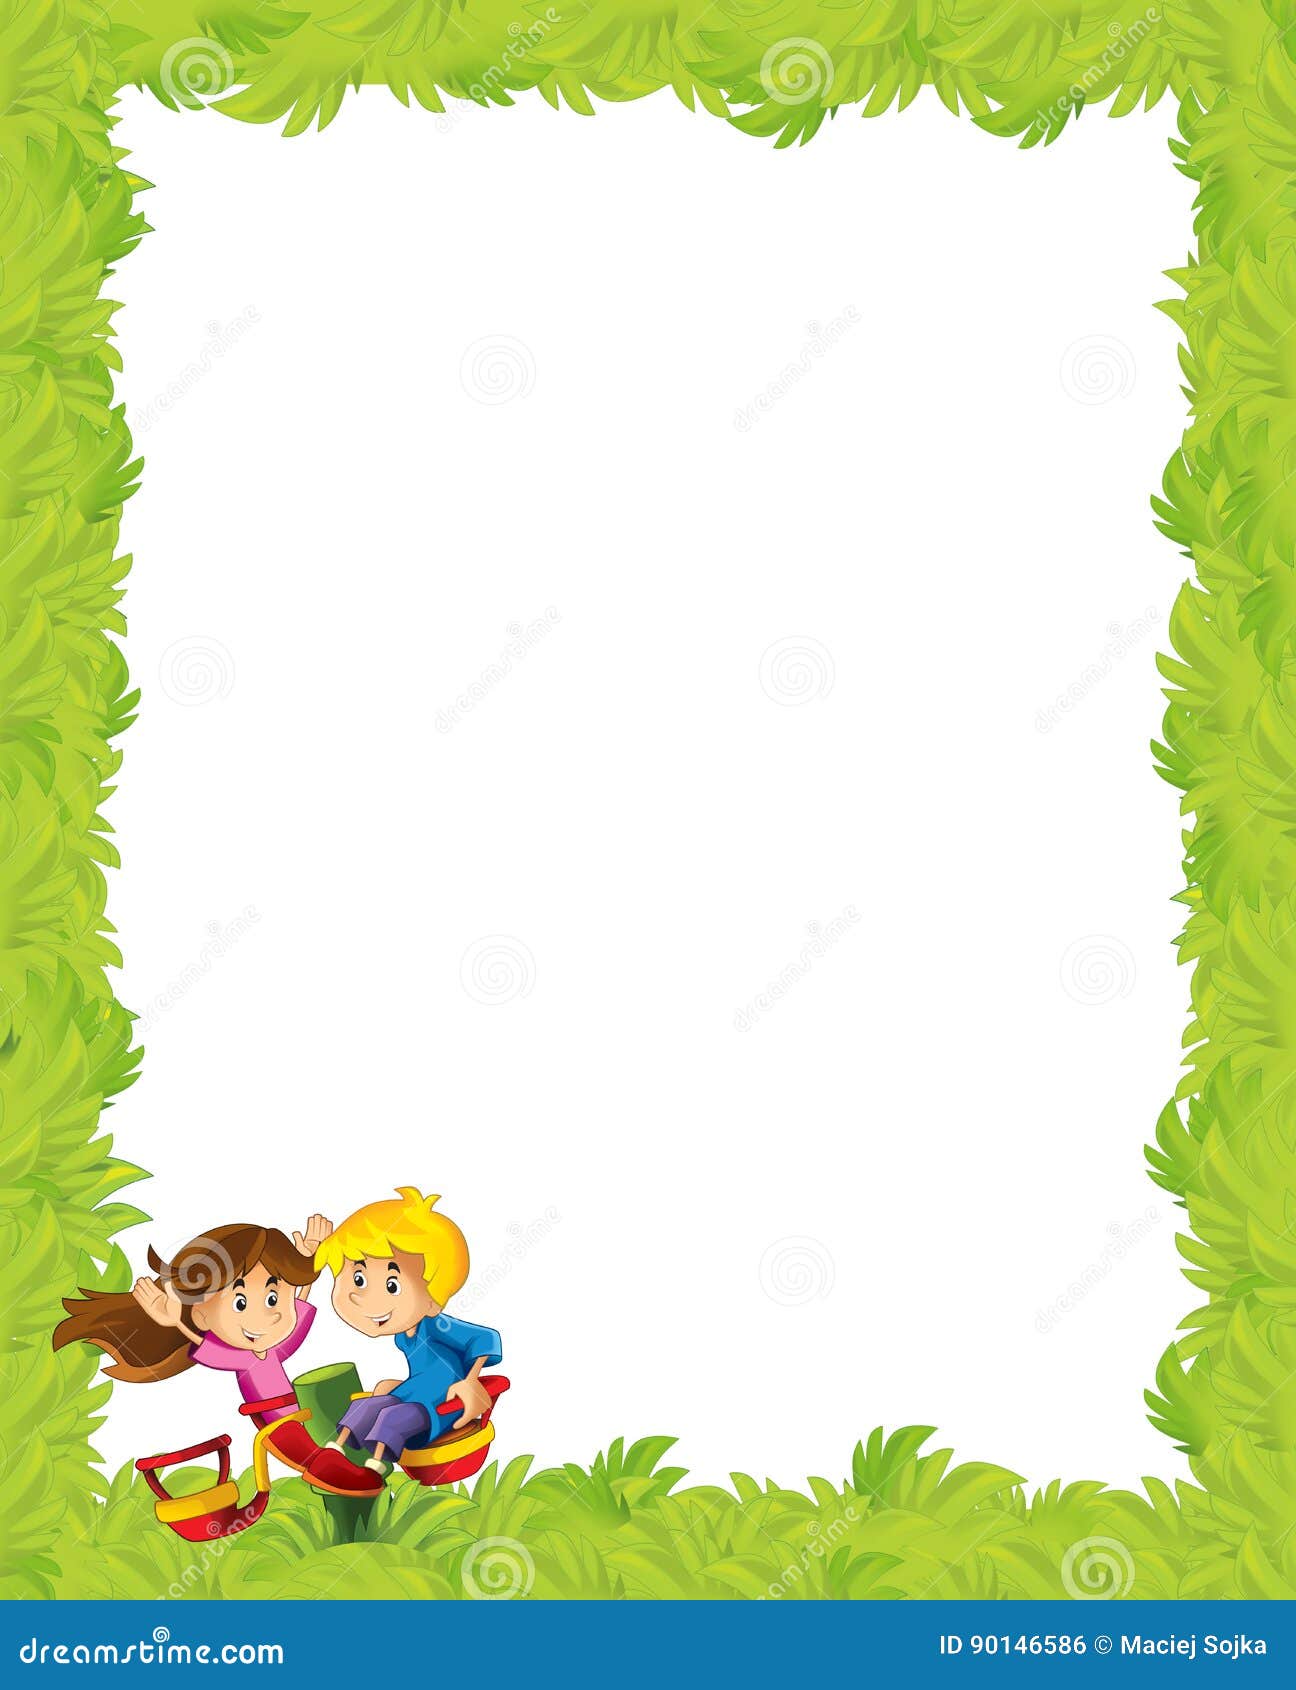 Kreskówki rama z dziećmi bawić się na boisko zabawce. Piękna i kolorowa ilustracja dla dzieci dla bajek - dla różnego użycia -